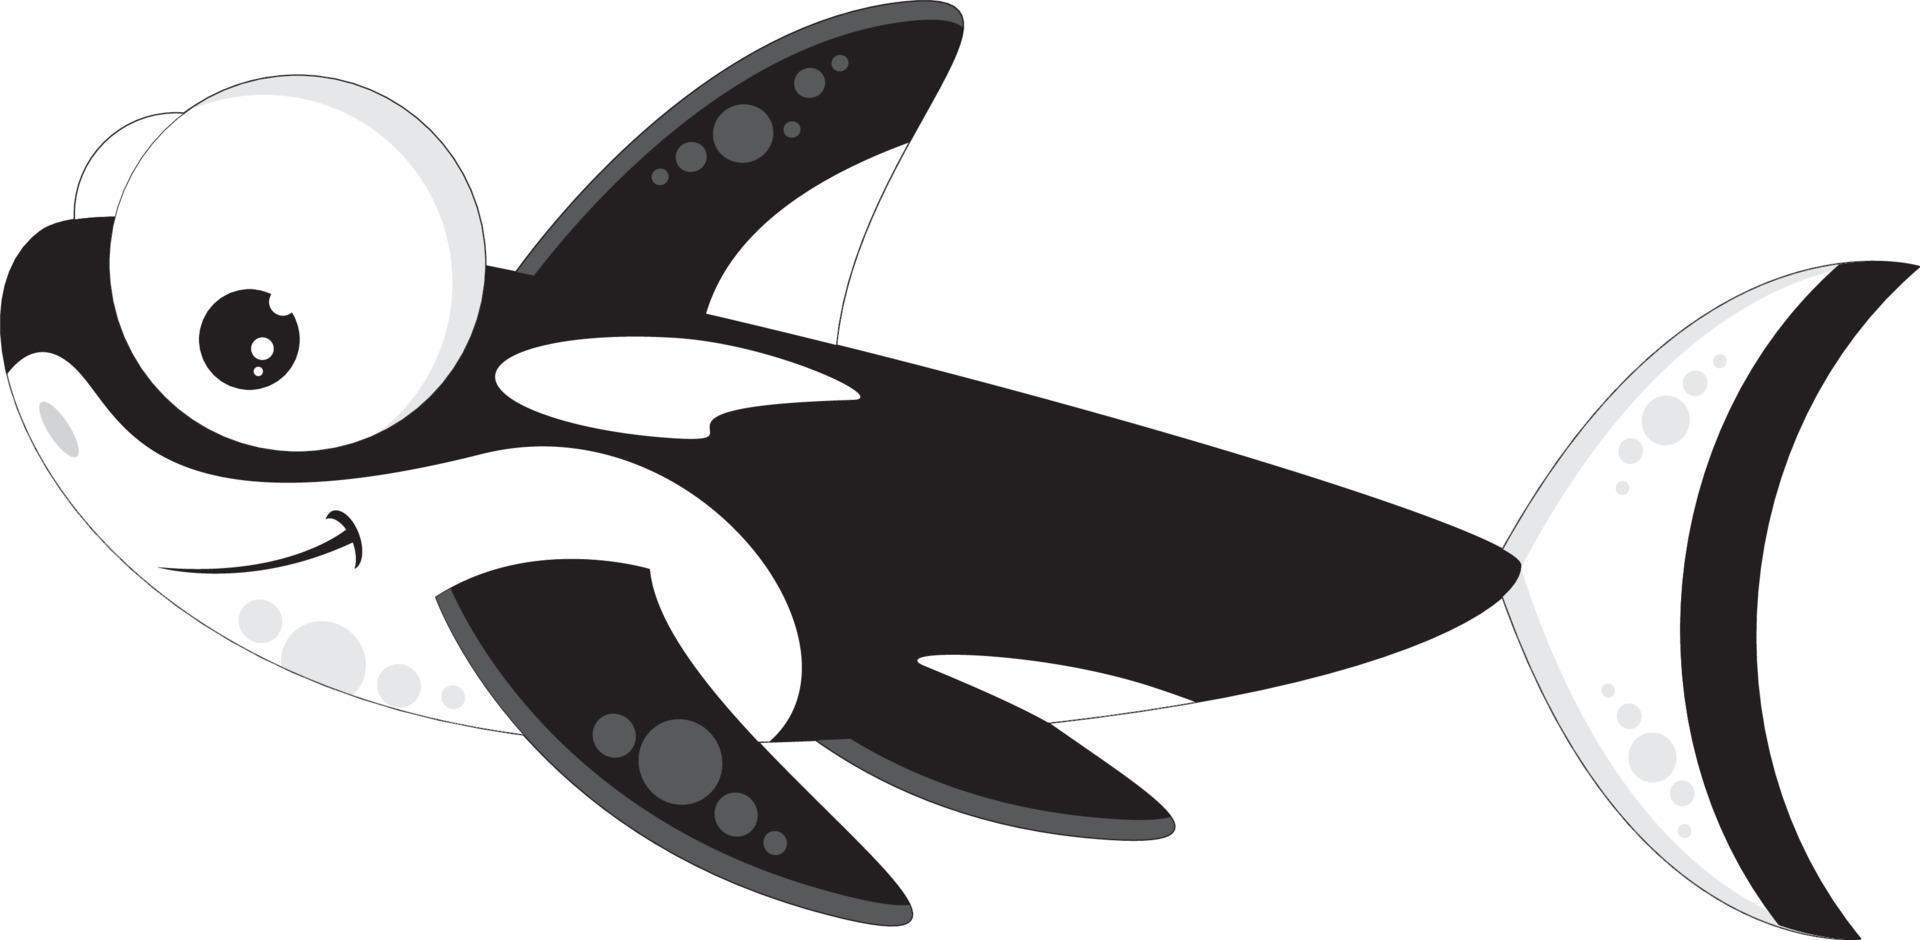 Cute Cartoon Orca the Killer Whale Illustration vector